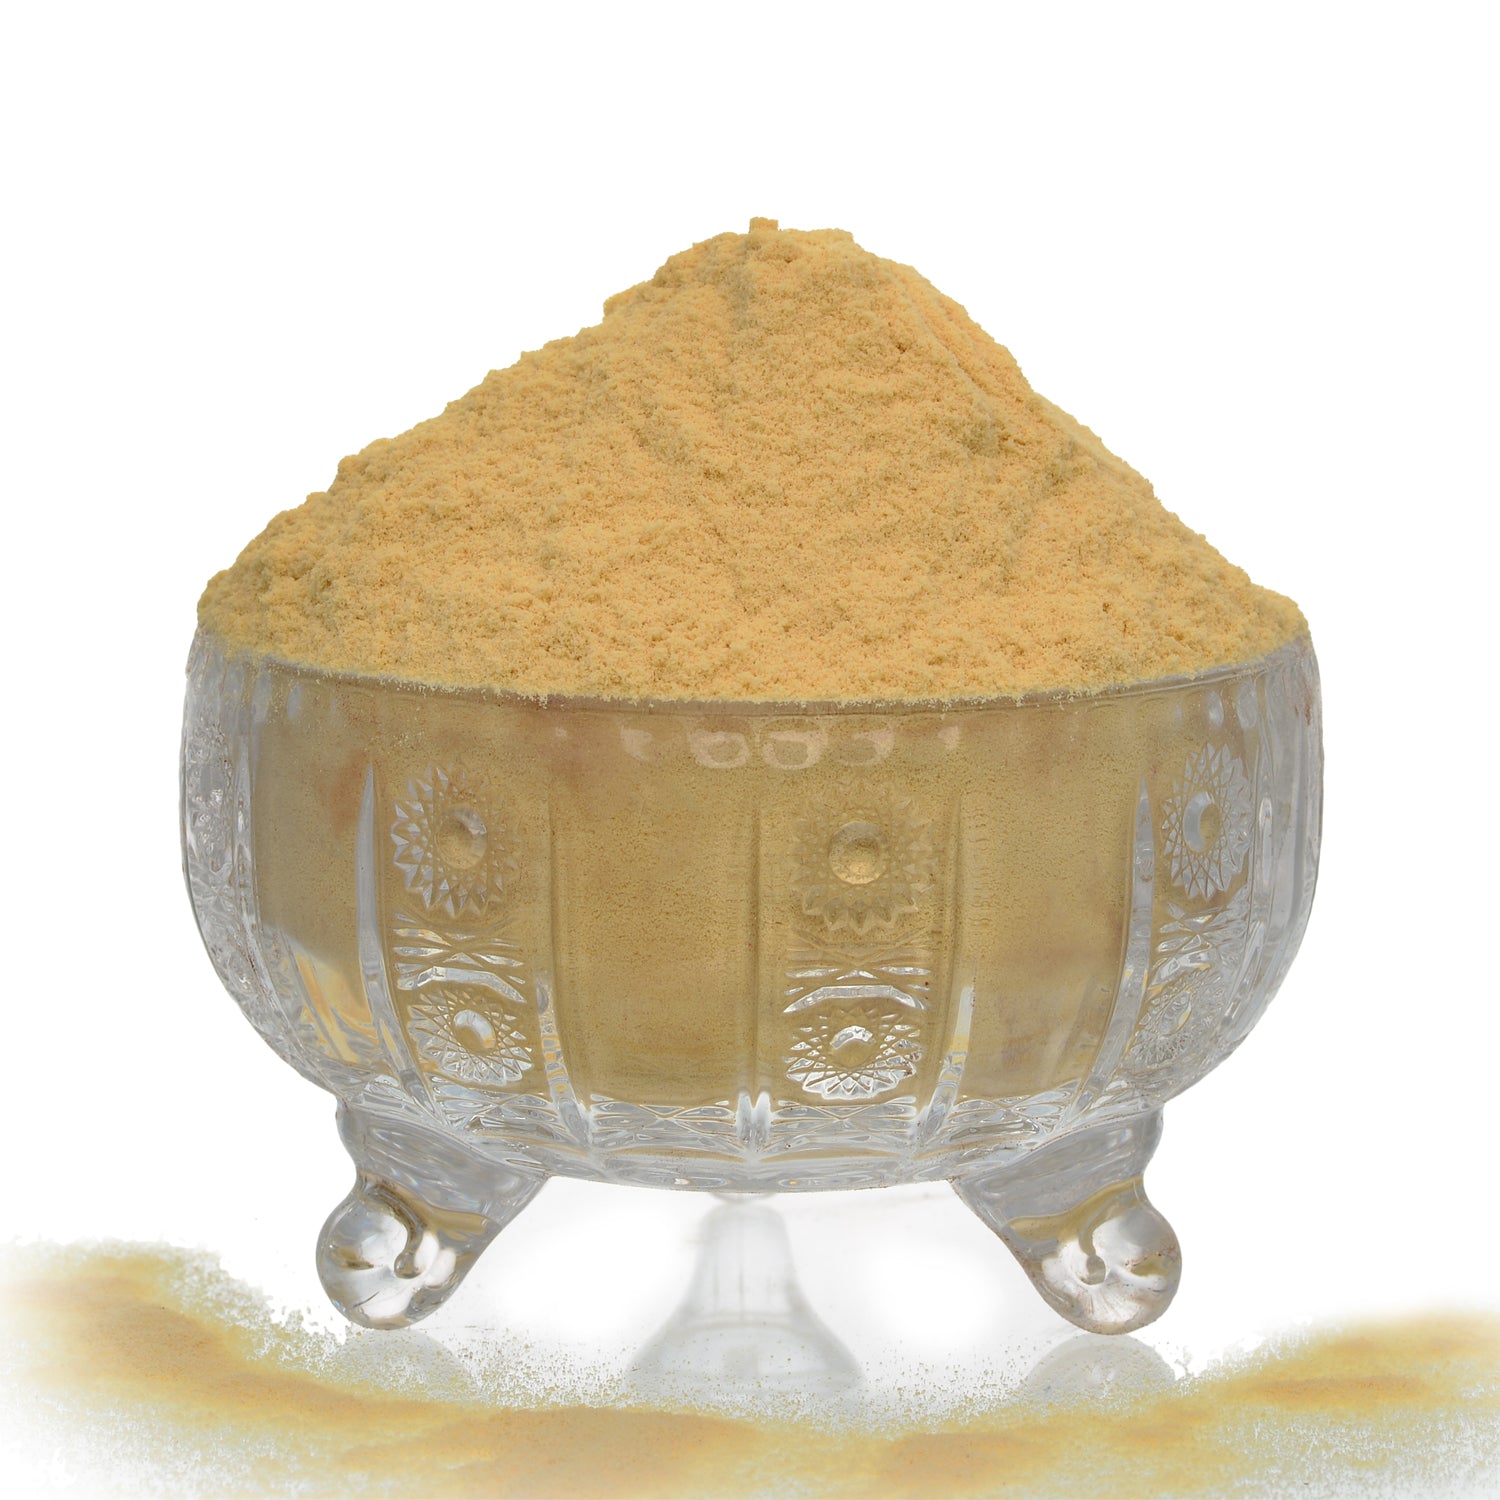 Soya Drink Powder - Vanilla - Vegan, Non GMO 200 g